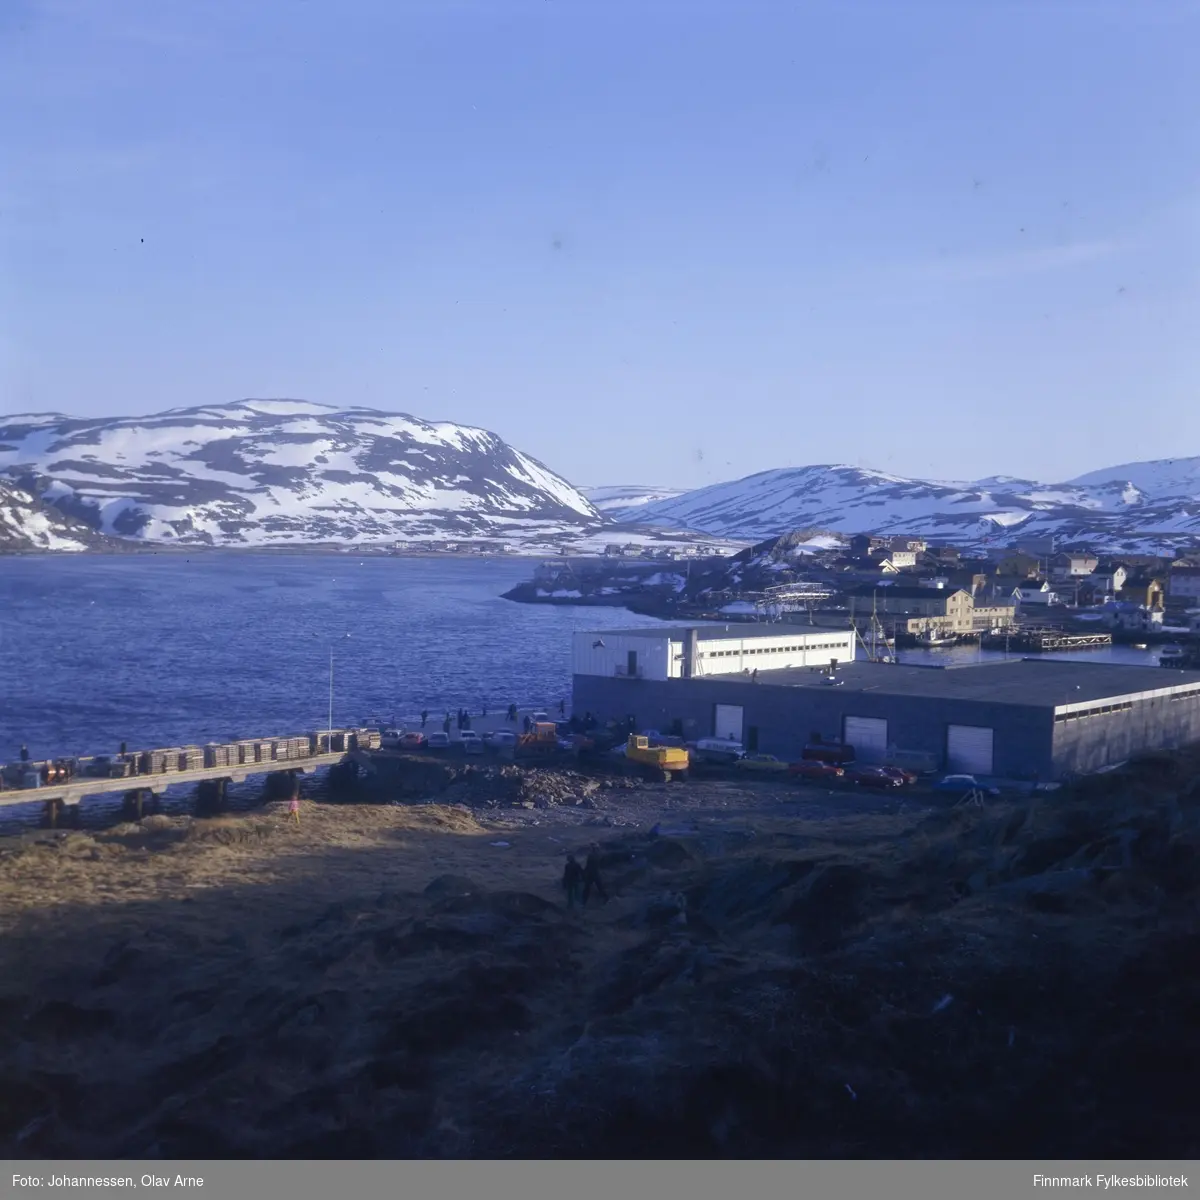 Foto av bygning i Båtsfjord (Finnmark)

Foto trolig tatt på 1960/70-tallet